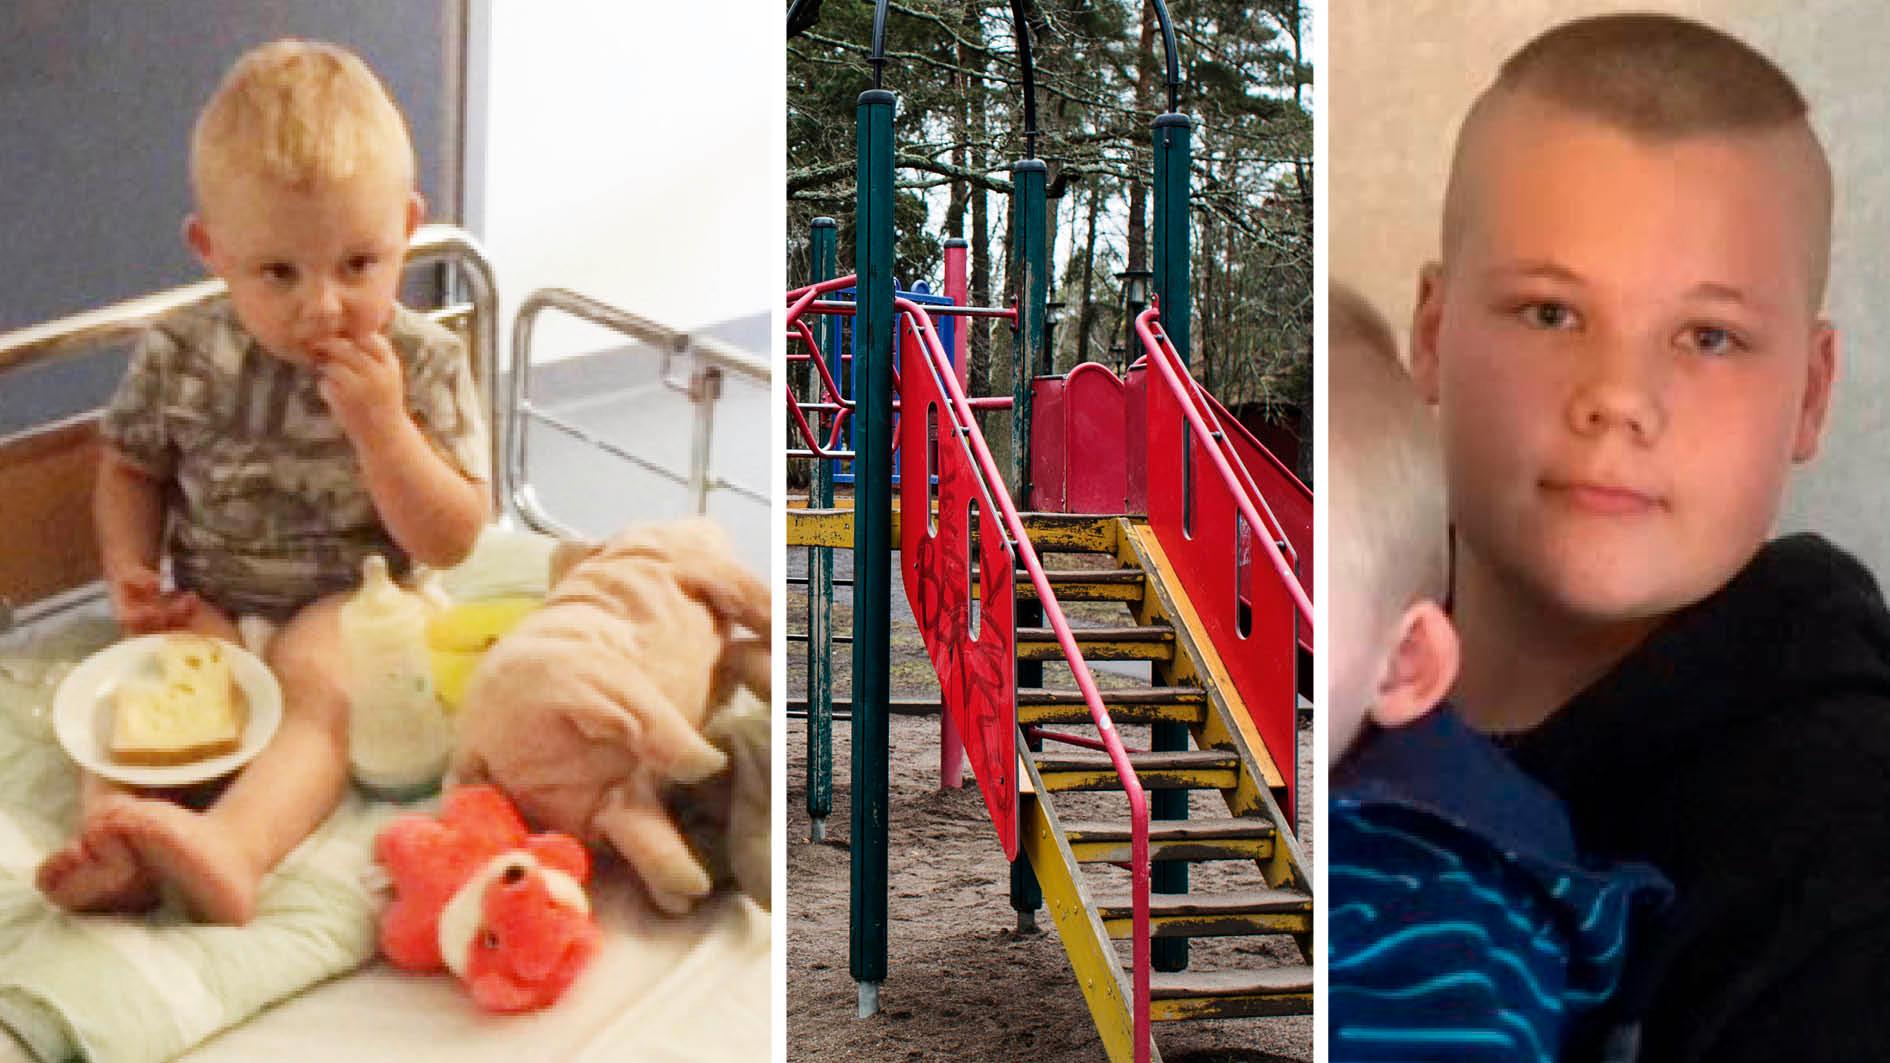 Tvåårige Liam föll från en klätterställning – och tappade medvetandet. Tack vare 13-årige Sigges rådiga insats började han att andas igen och kunde föras till sjukhus i ambulans. 